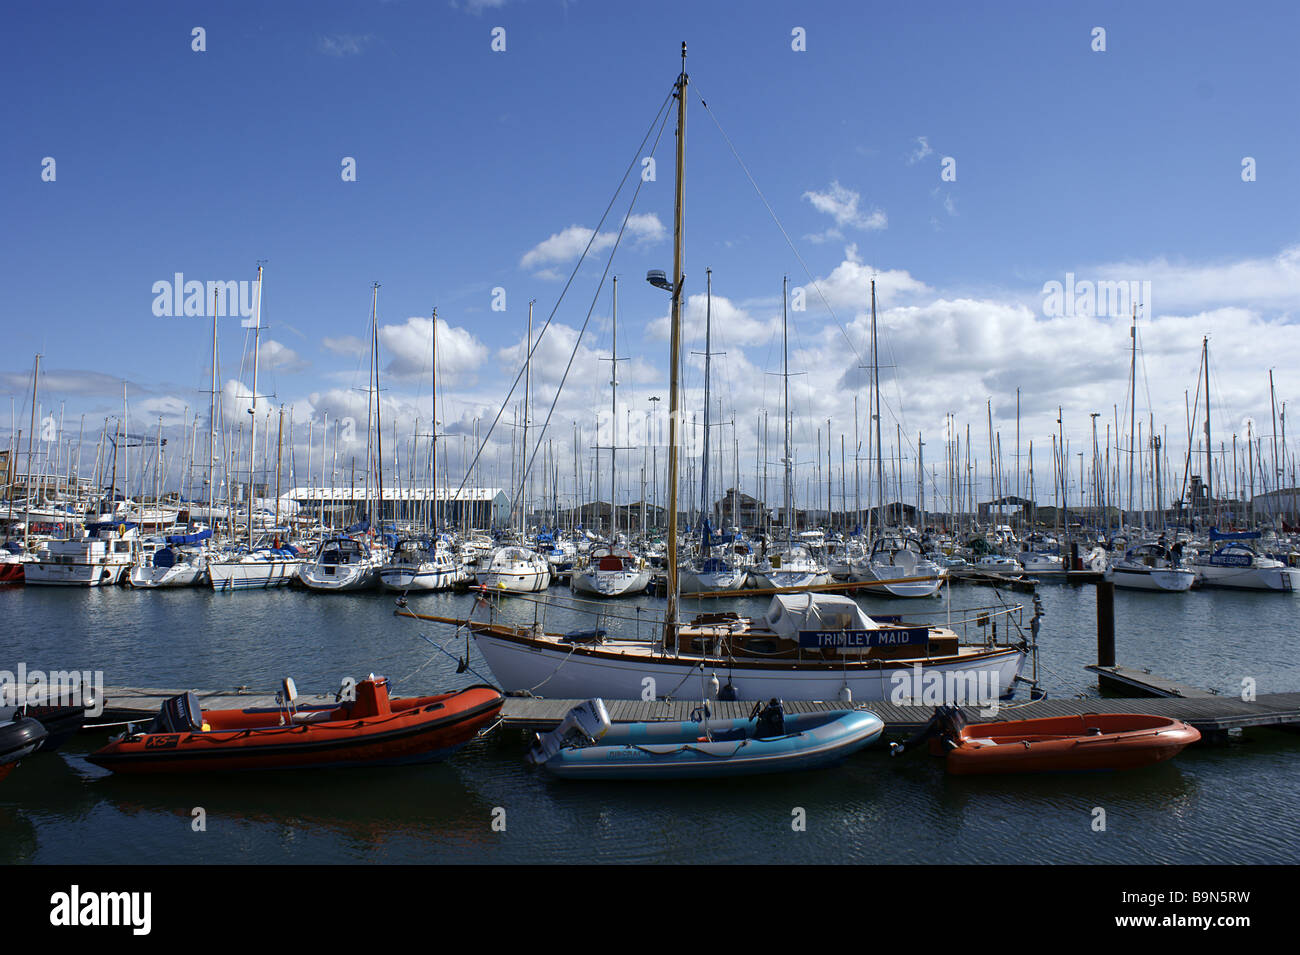 Boats moored at Poole yacht marina Stock Photo